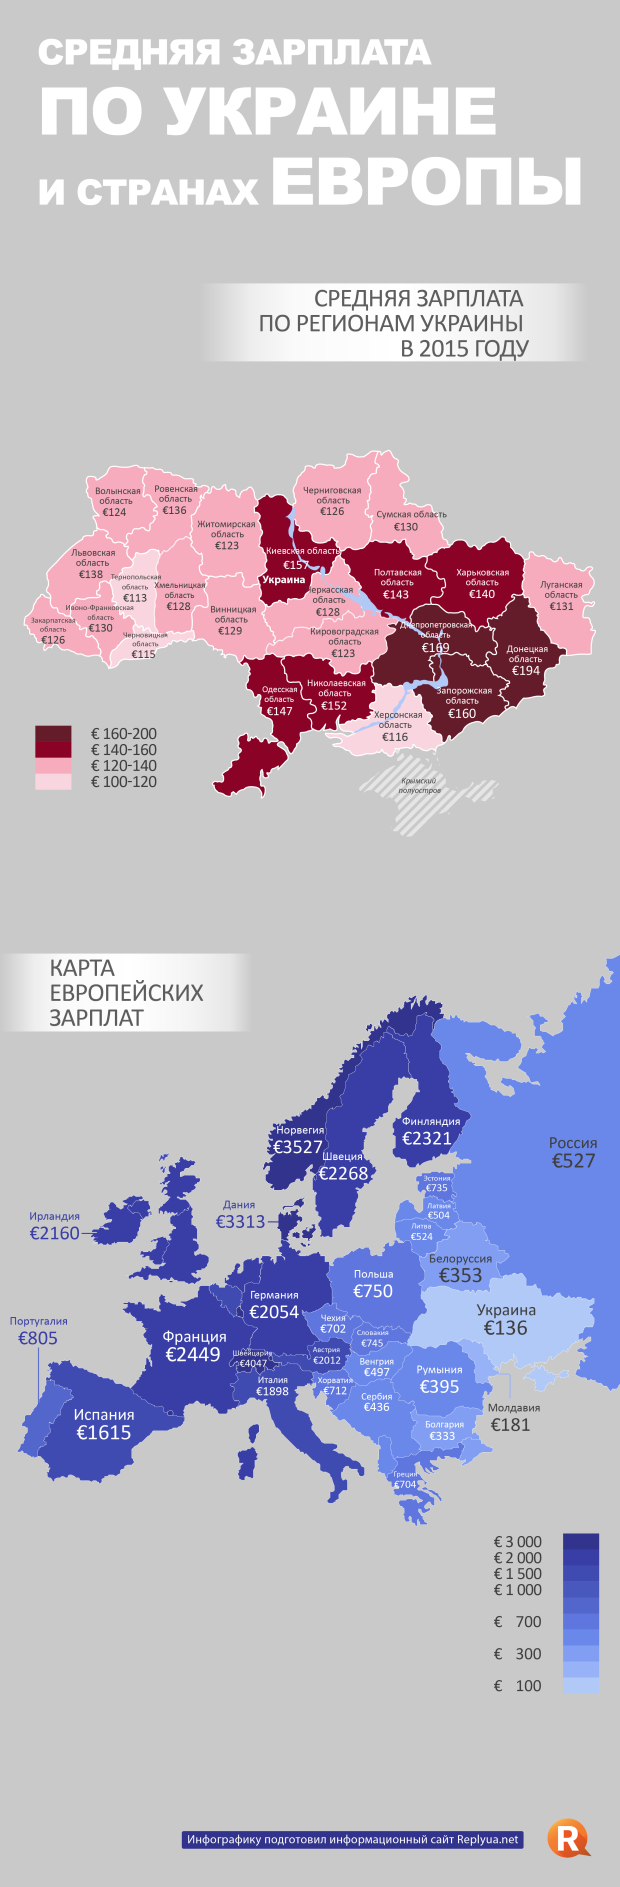 Средняя зарплата по Украине и в странах Европы 